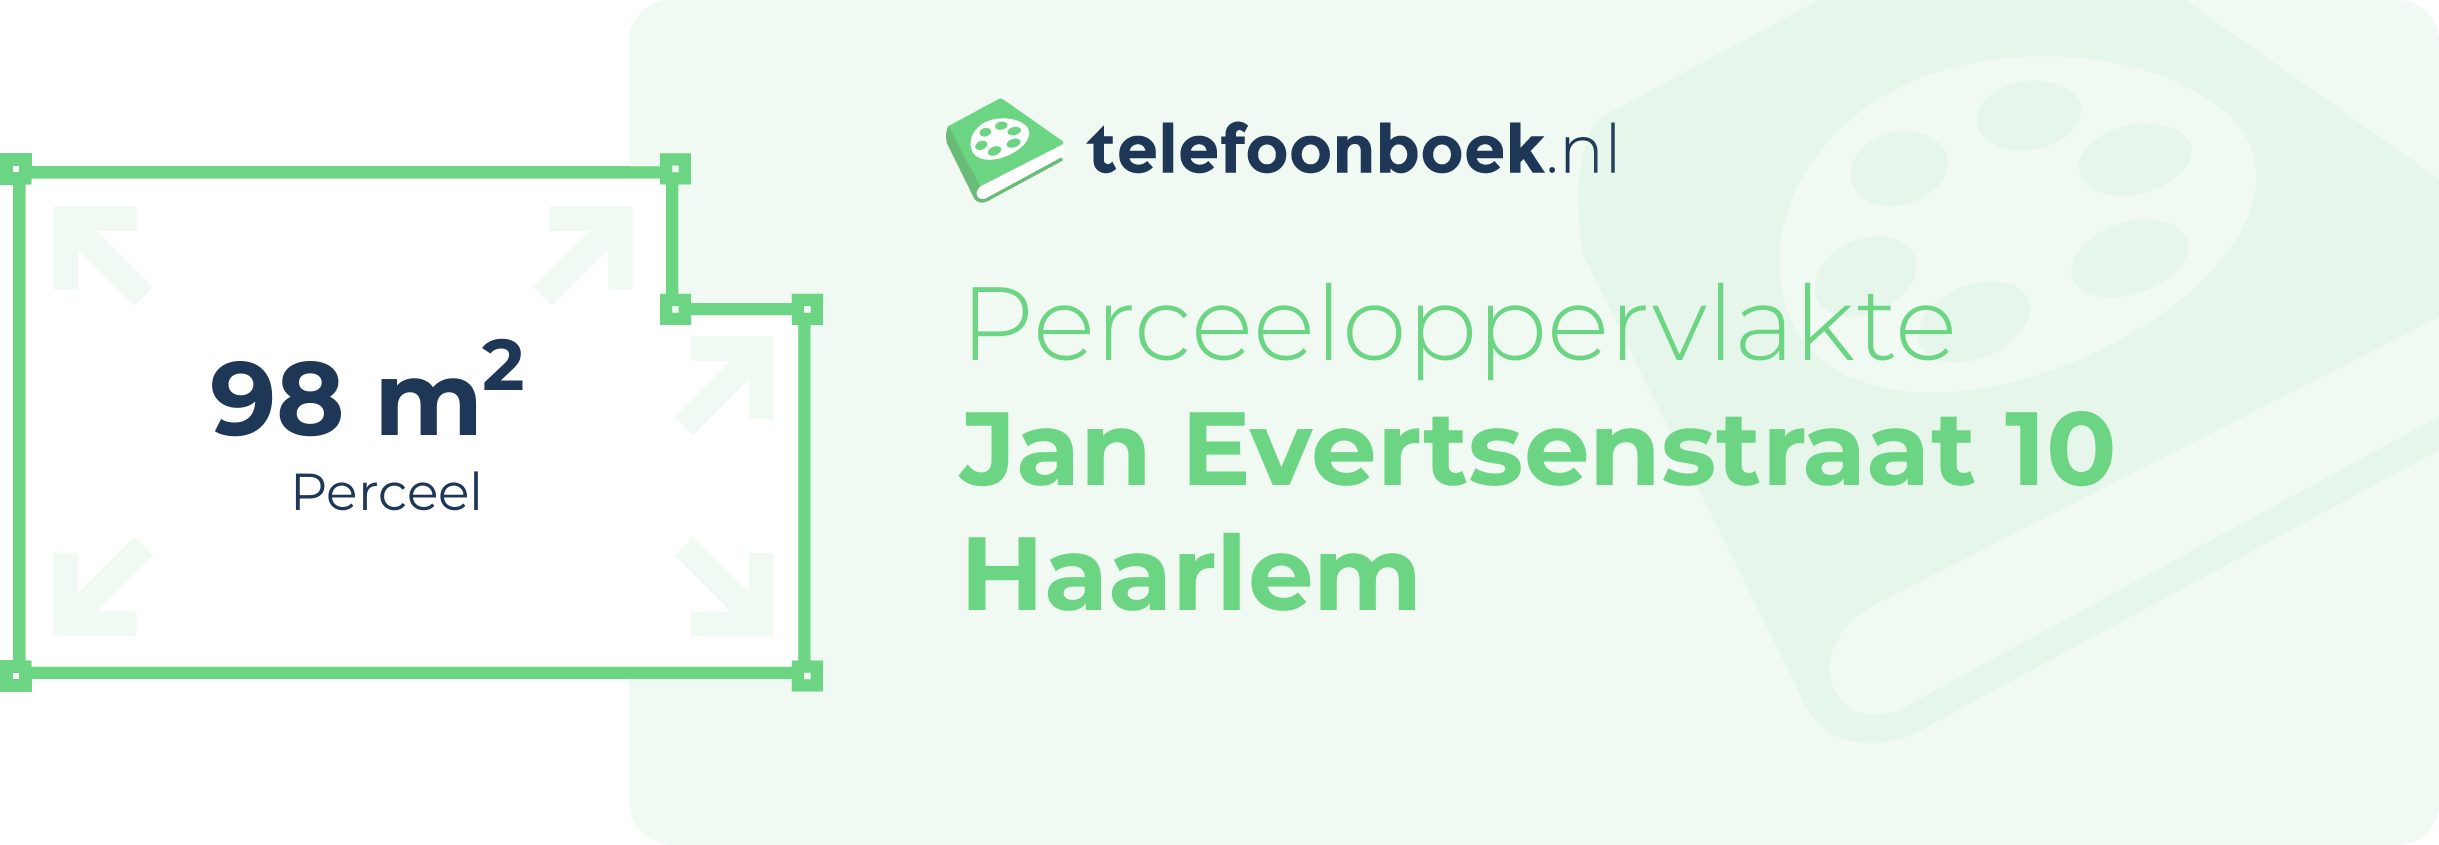 Perceeloppervlakte Jan Evertsenstraat 10 Haarlem